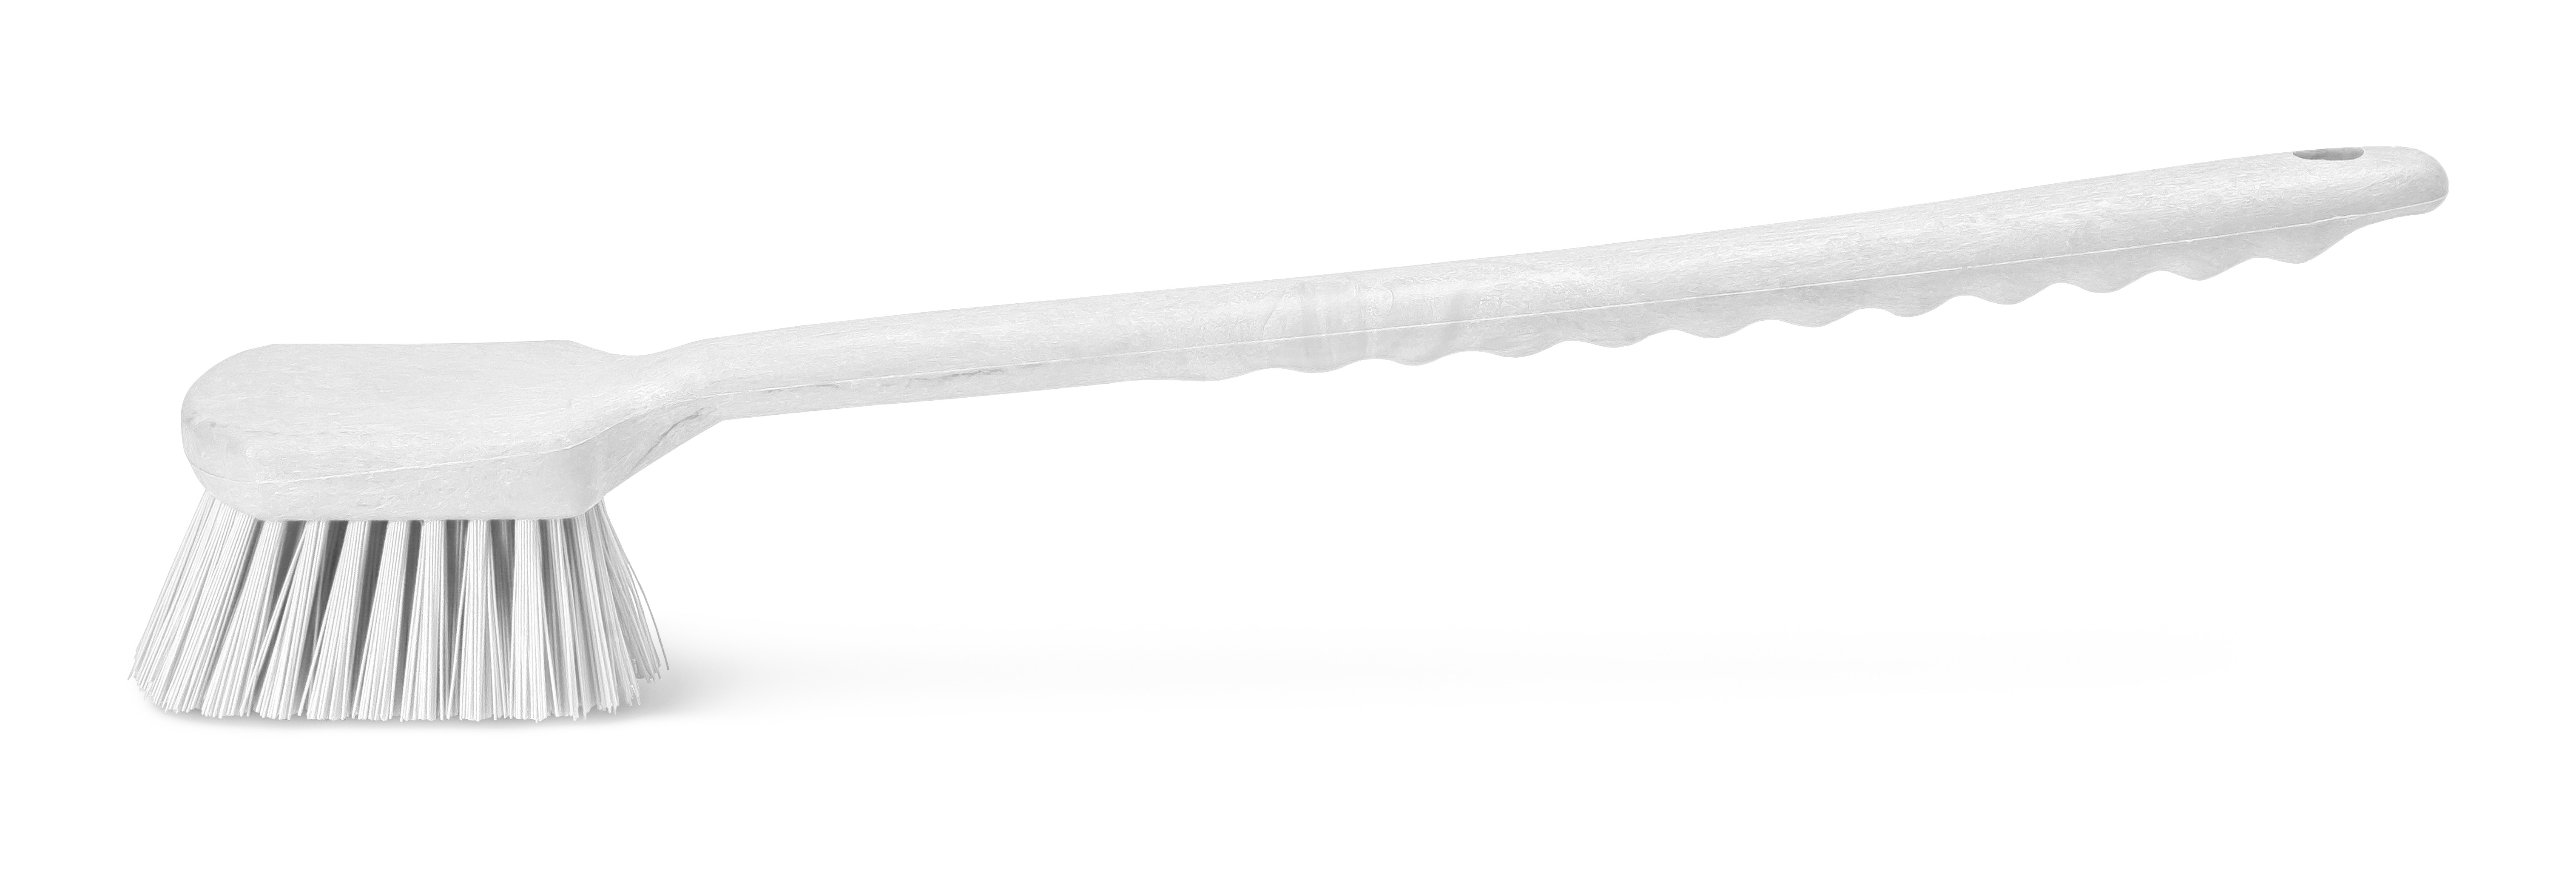 Щетка HACCPER с длинной ручкой, для мытья и оттирки, жесткая, 500 мм, белая